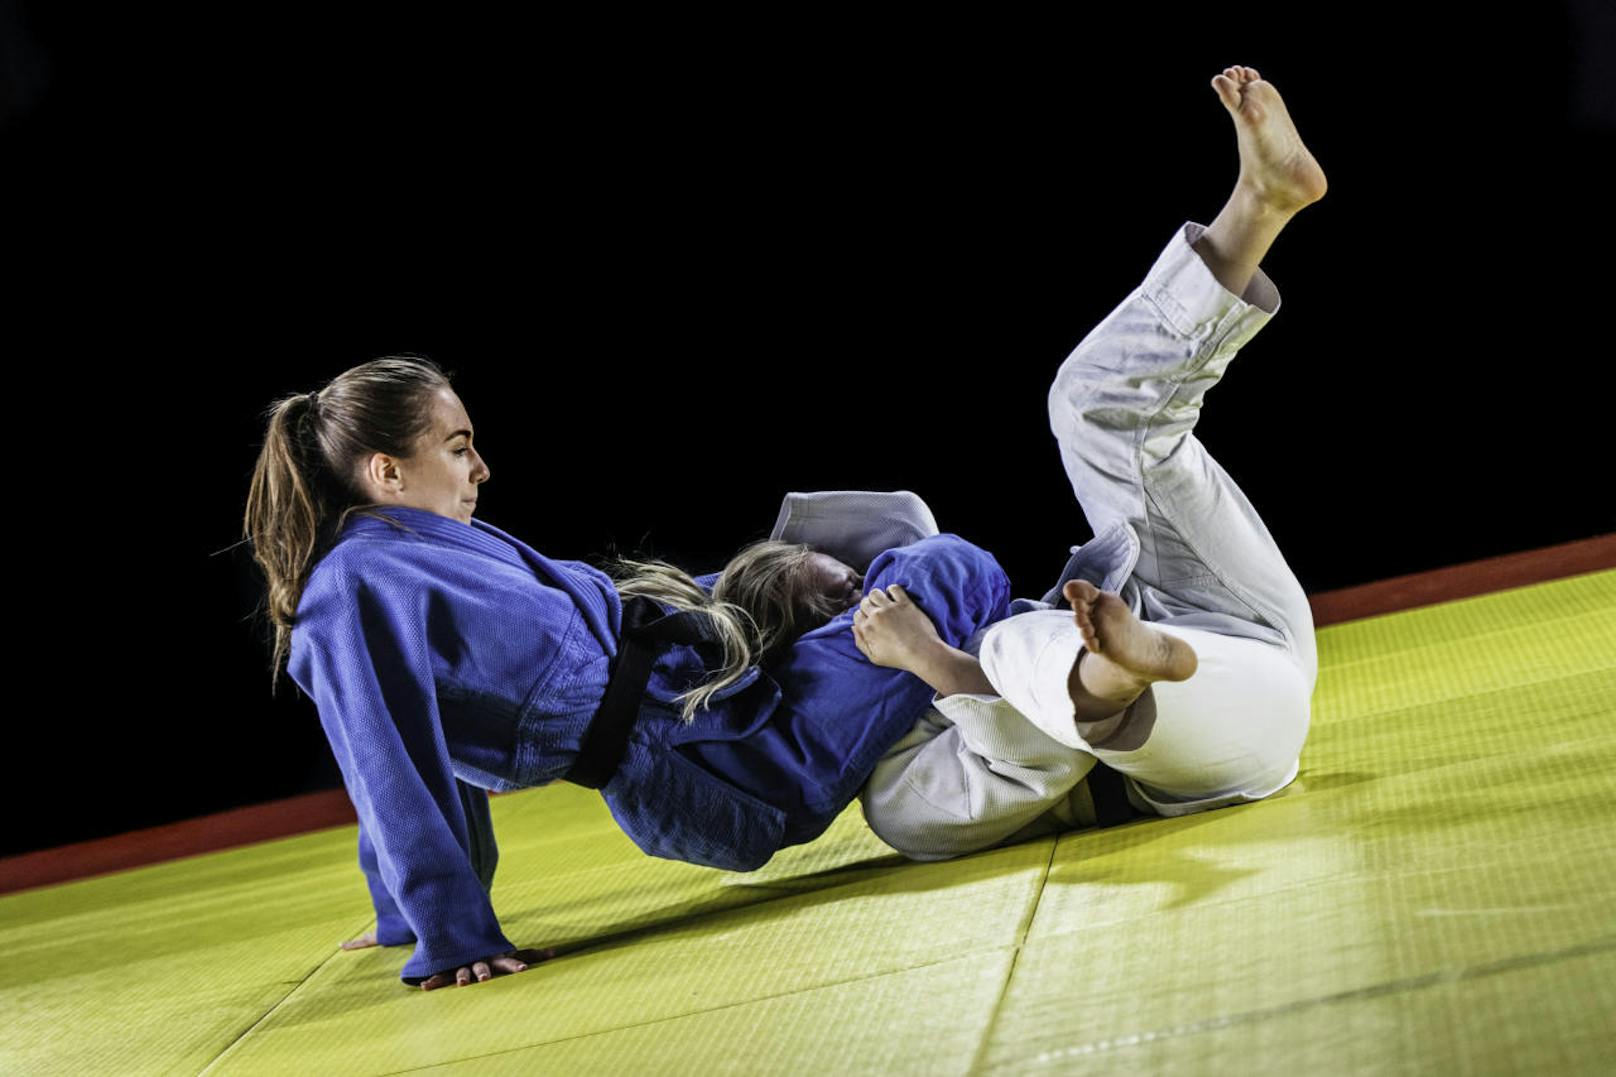 Von <b>Kampfsportarten</b> wie Judo oder hartem Boxtraining, bei denen man geworfen oder gestoßen wird, raten Experten in den ersten neun Monaten ab.